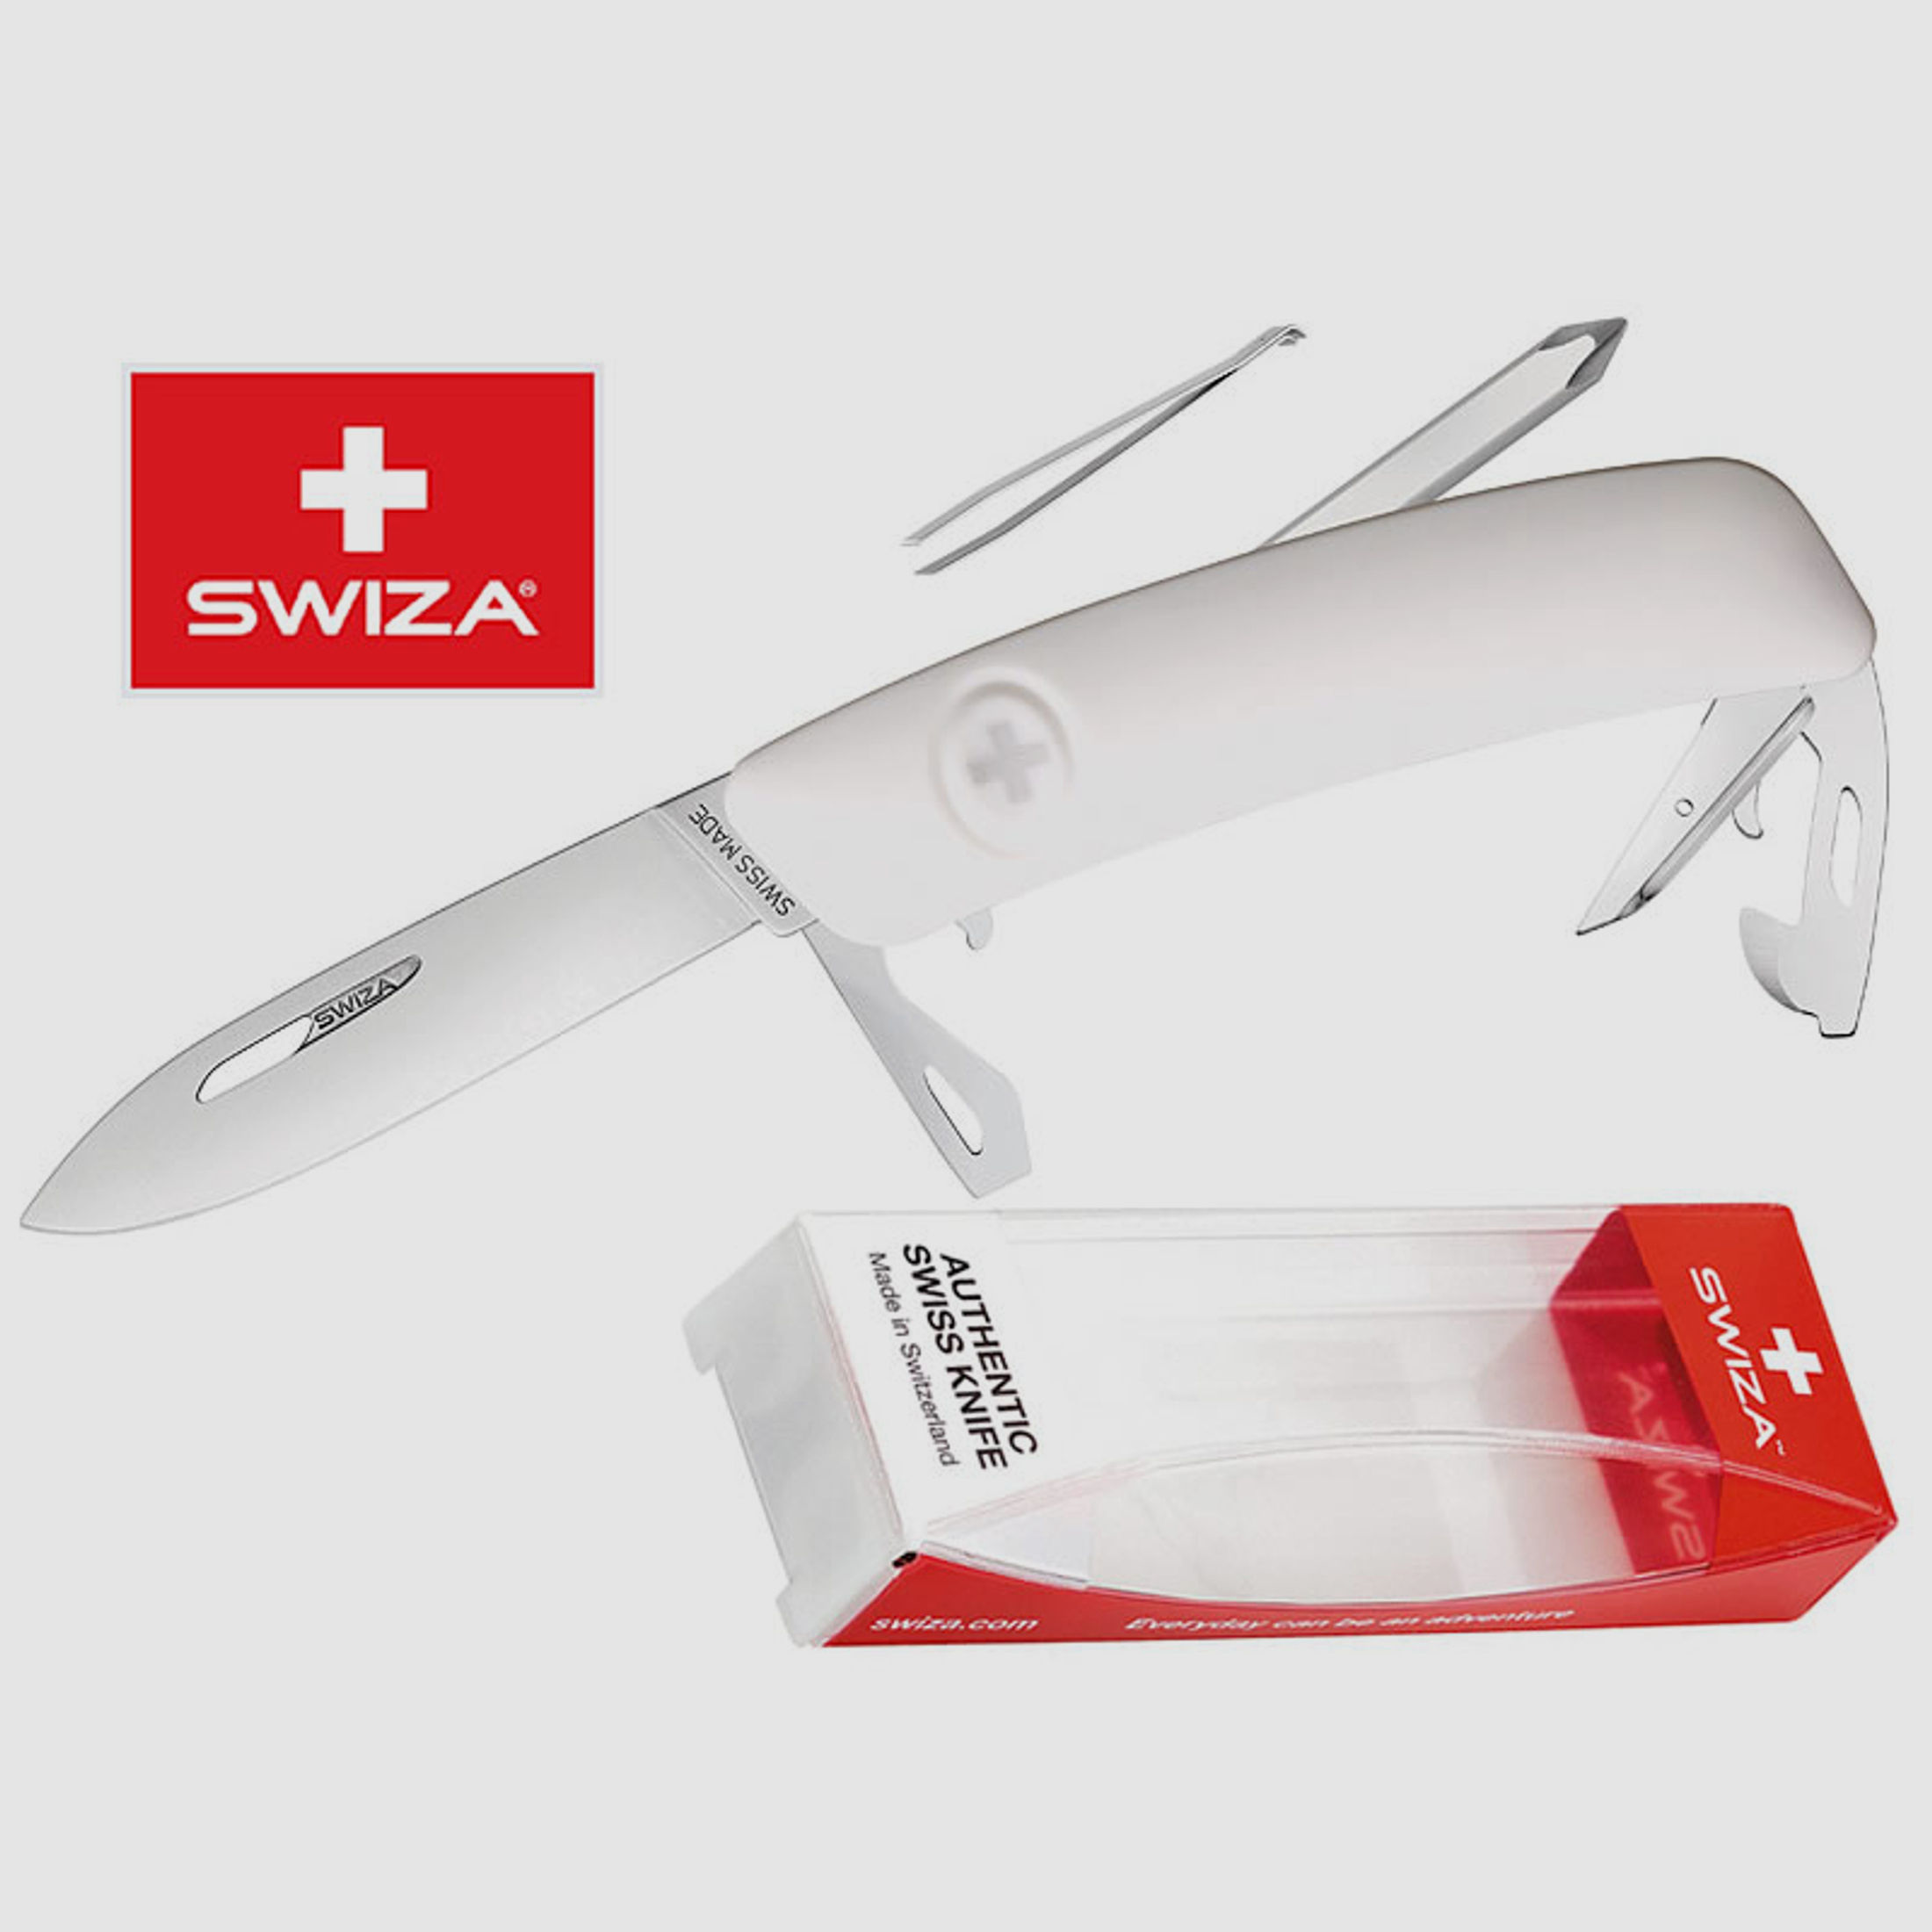 SWIZA Schweizer Messer D04, weiss, Edelstahl 440, 11 Funktionen, Kreuzschlitzdreher, Multi-Tool